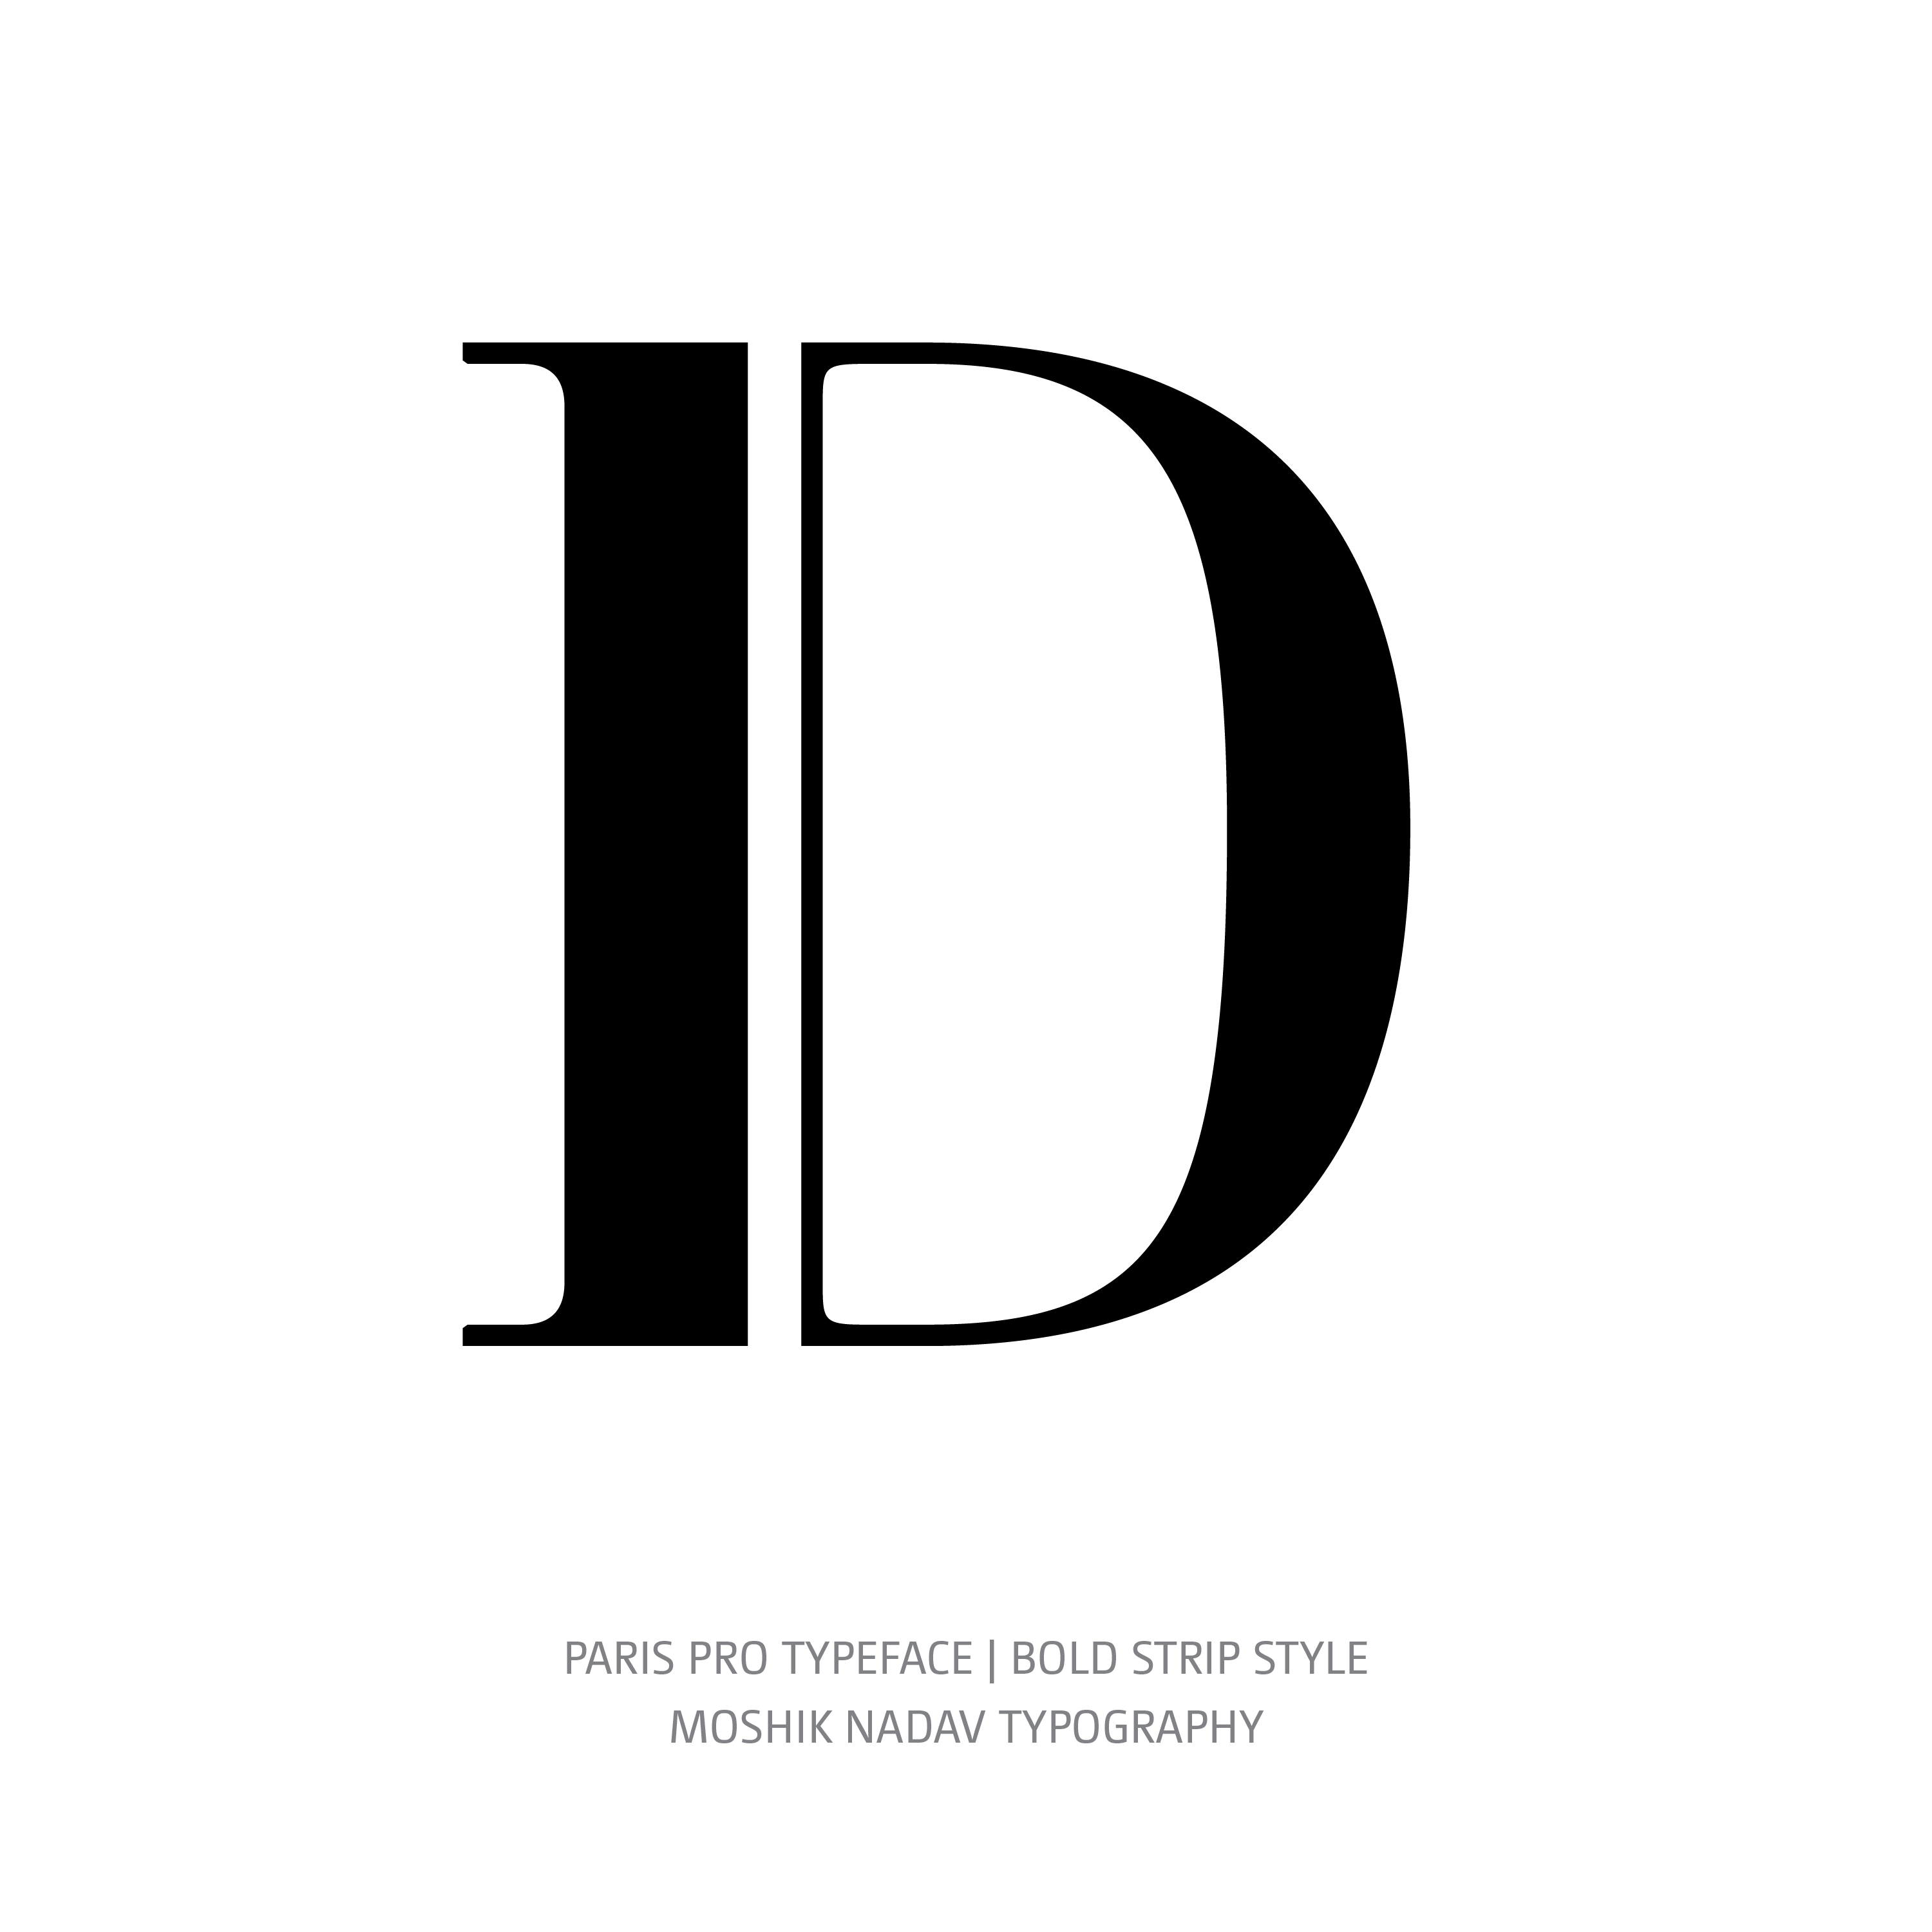 Paris Pro Typeface Bold Strip D